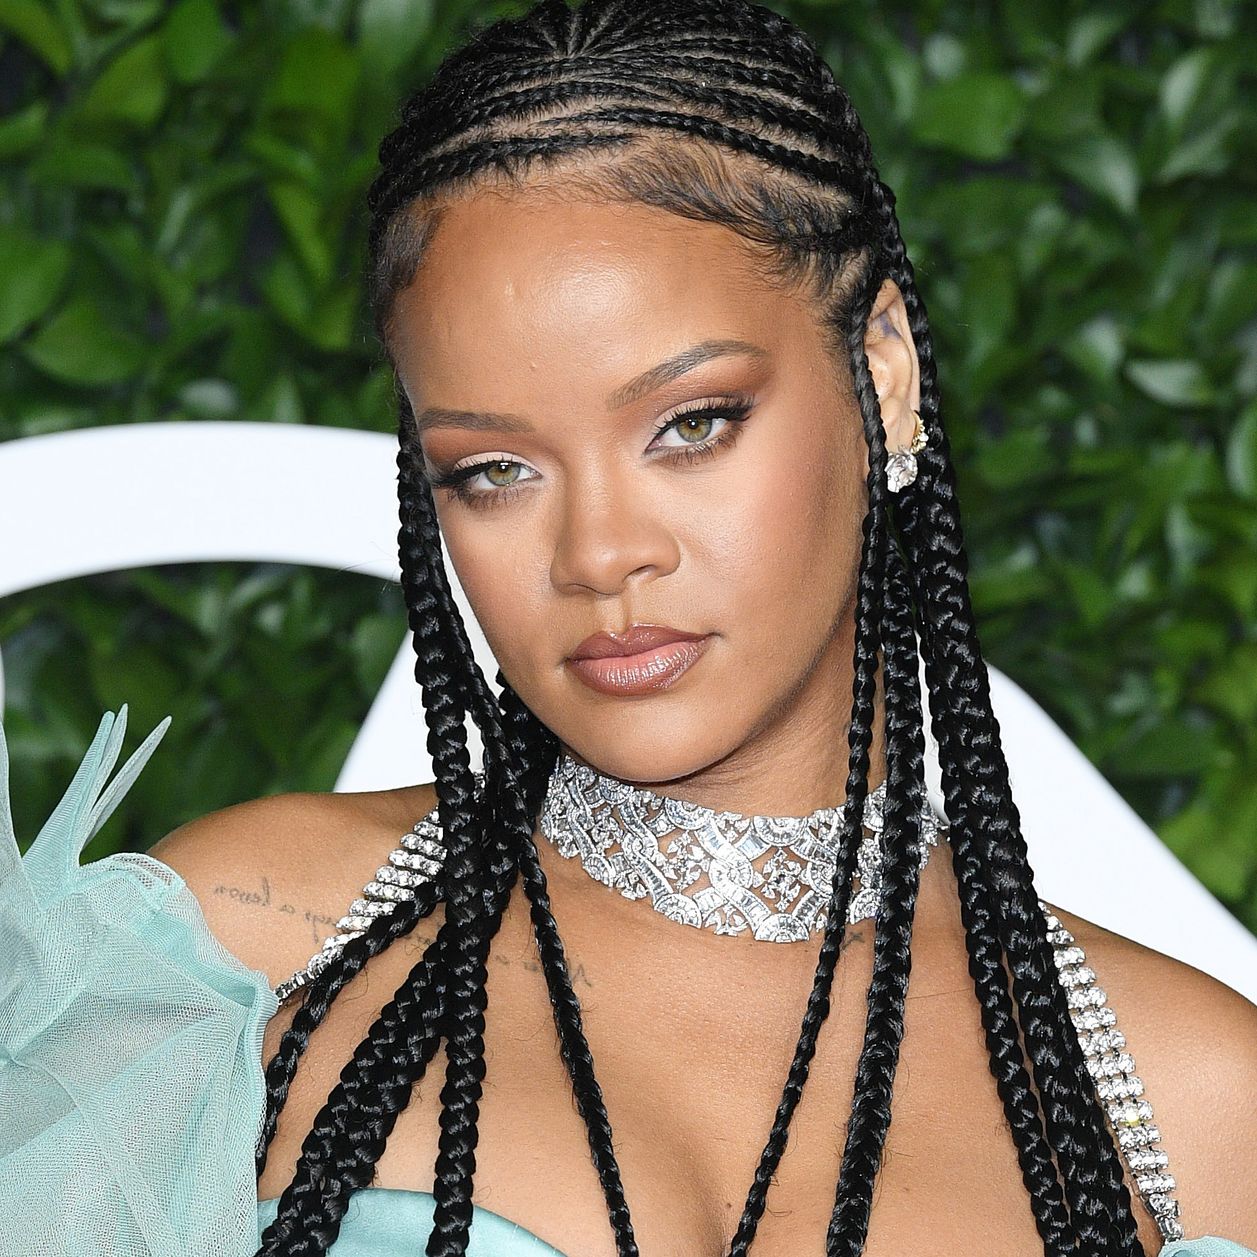 Acné apparente et démaquillée, Rihanna s'expose au naturel sur Instagram